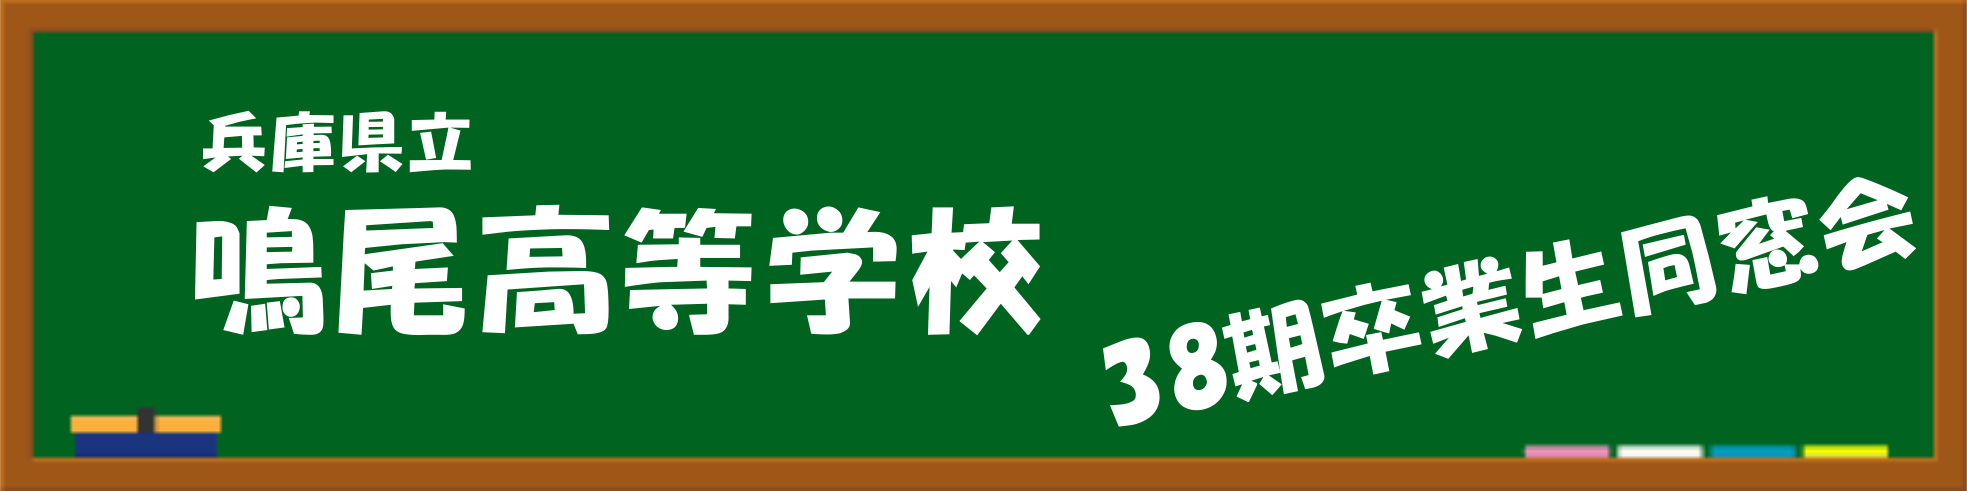 【第二回】〜50th Birthday Celebration〜 鳴尾高校38期生同窓会